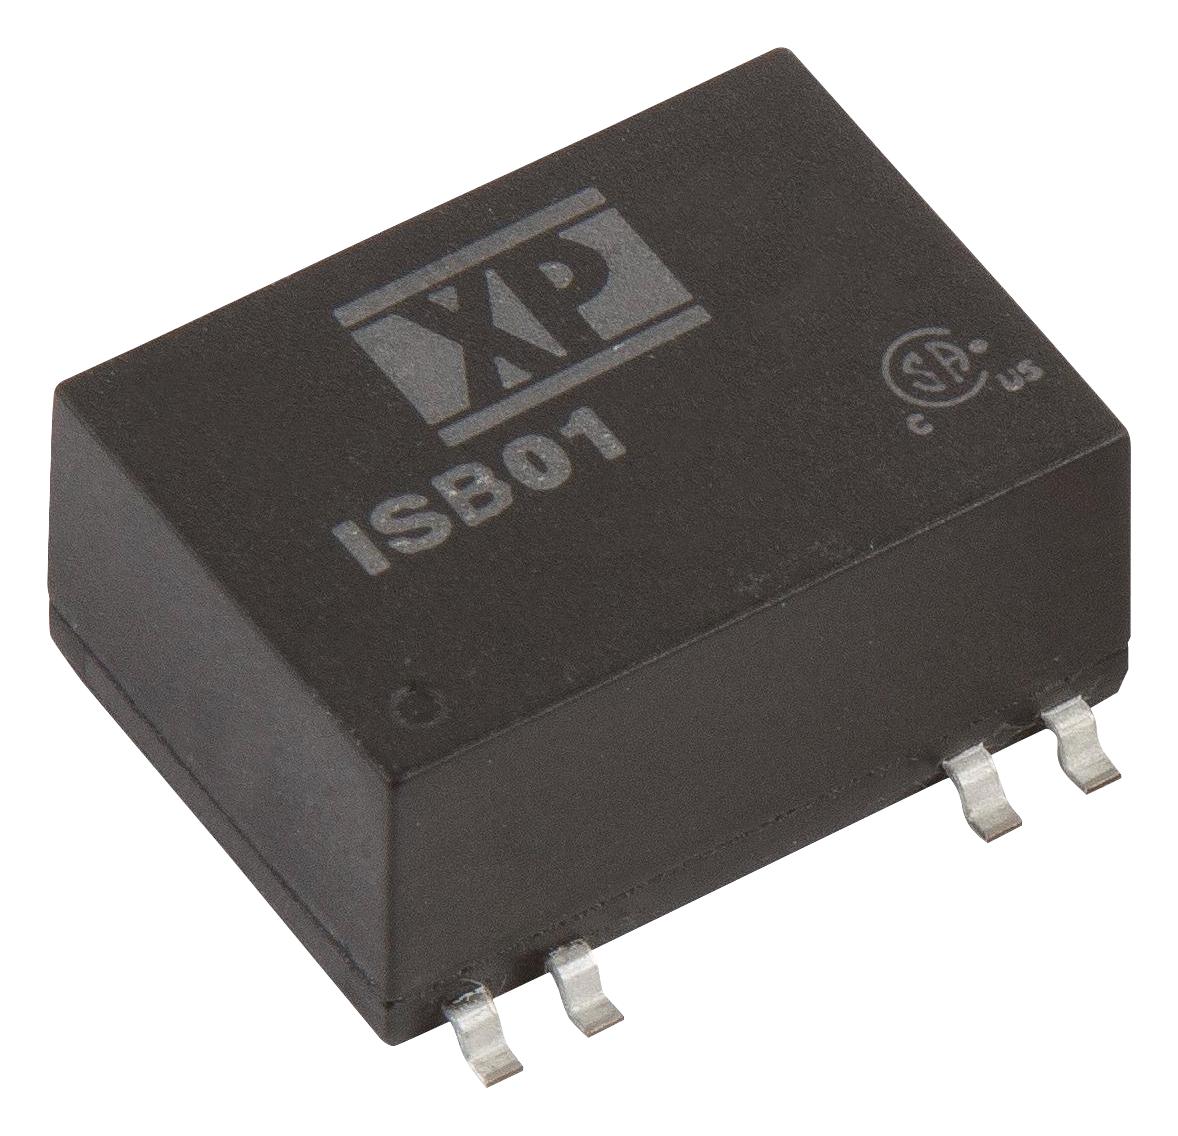 ISB0148S15 DC-DC CONVERTER, 15V, 0.067A XP POWER